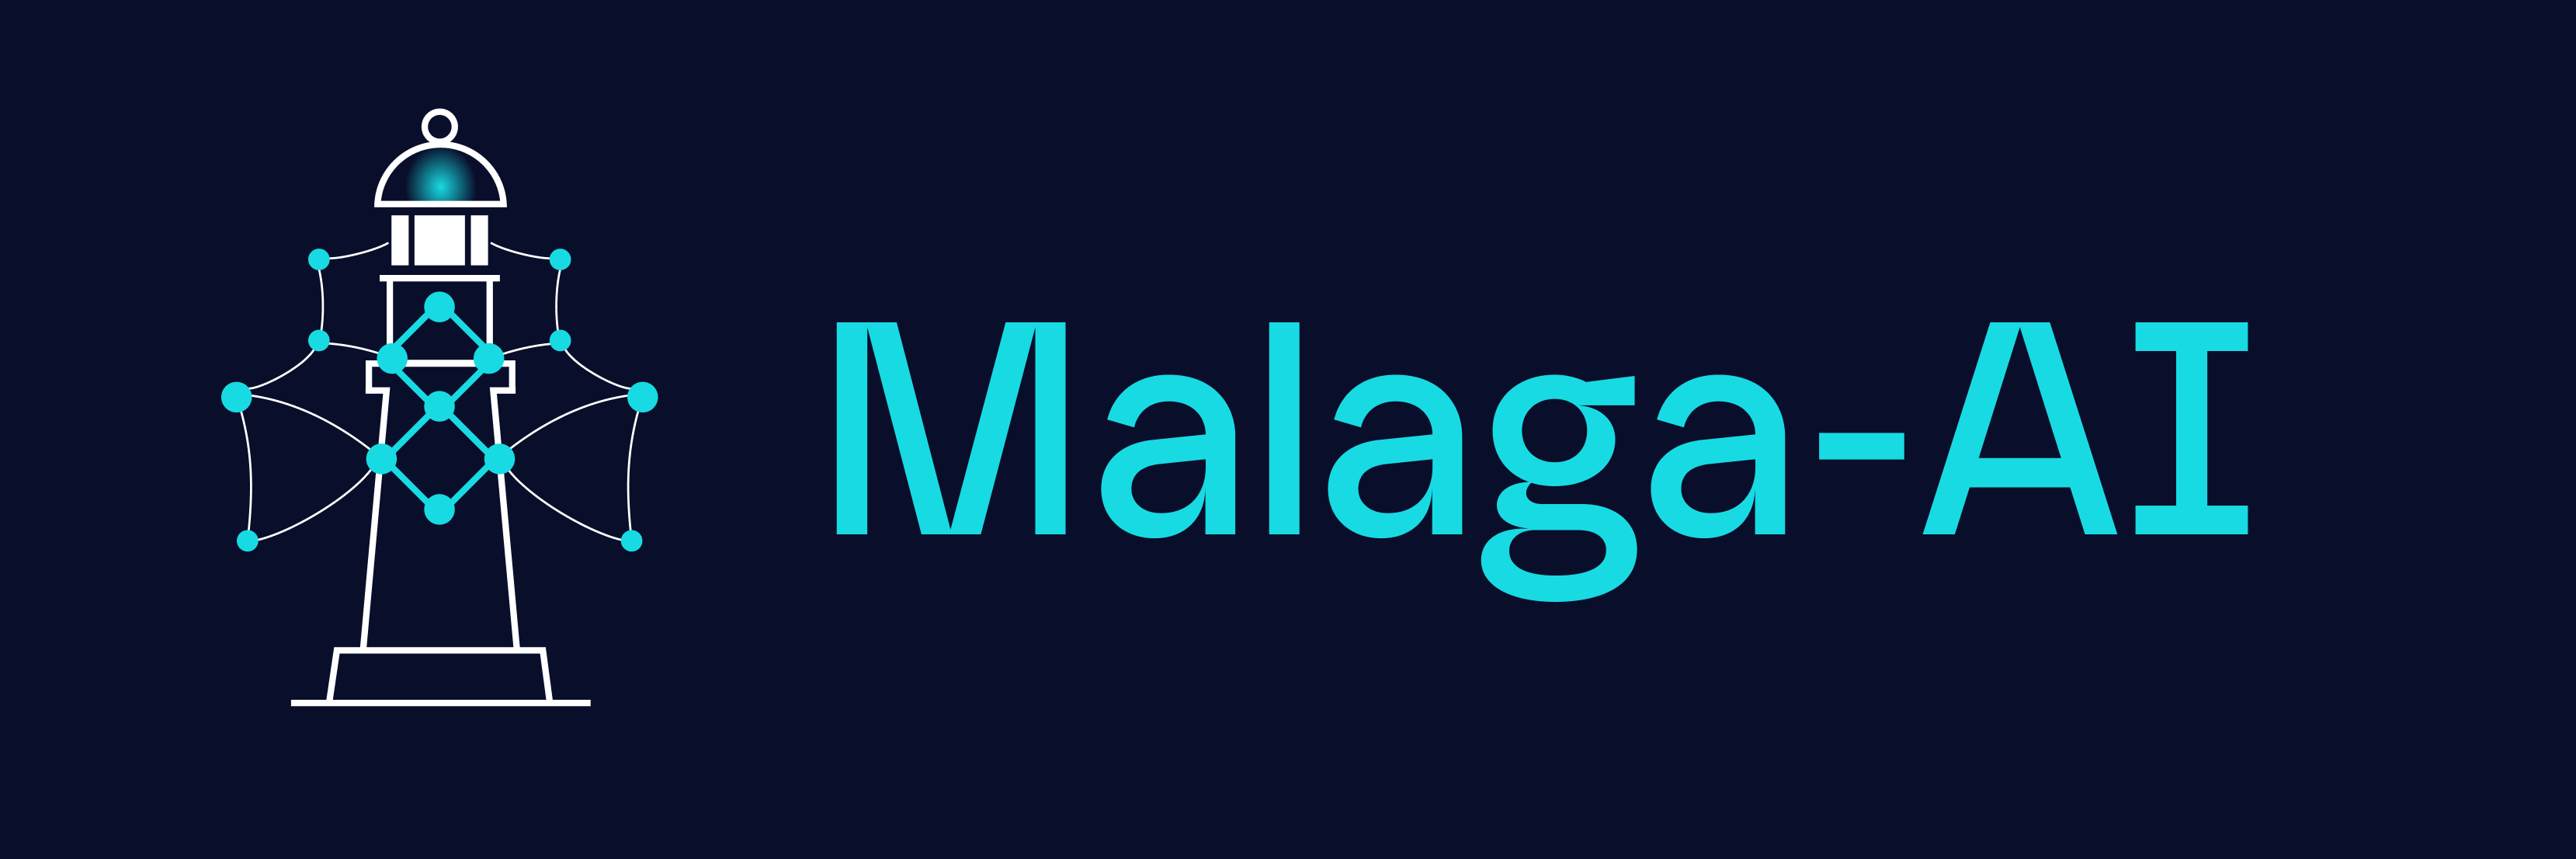 Malaga-AI logo